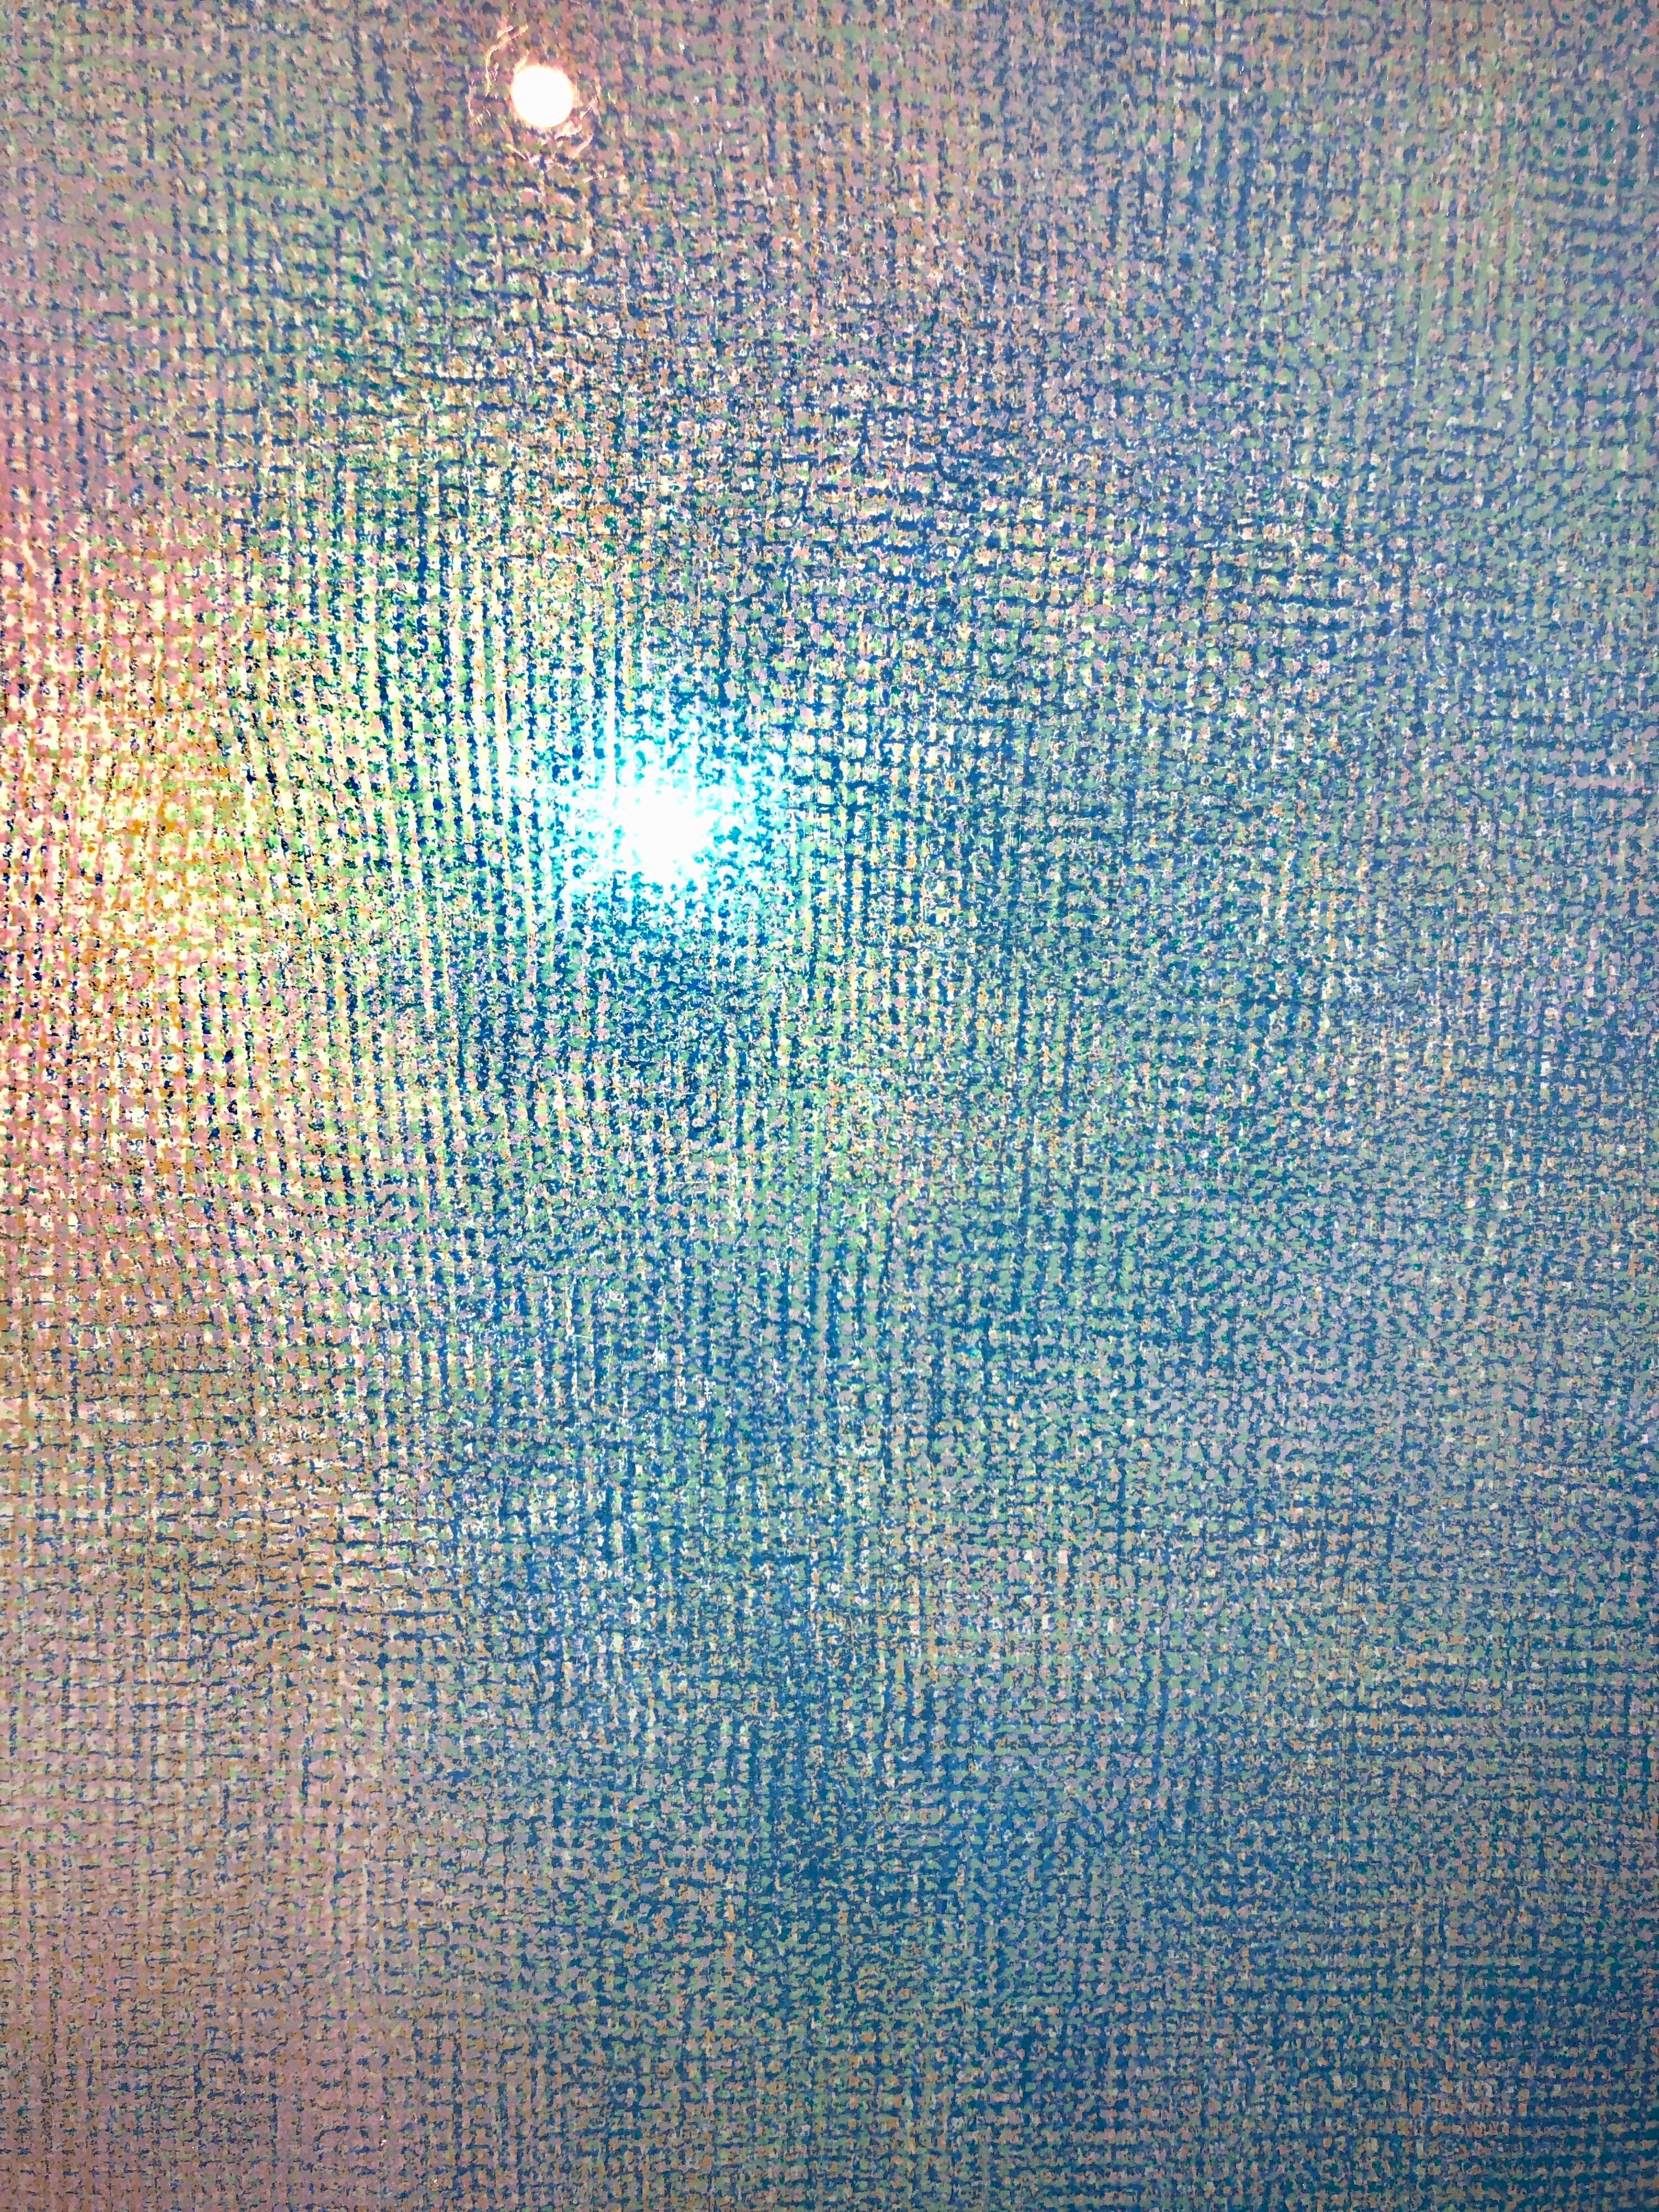 Huge 6ft Natkin Abstract Expressionist, Blue Silkscreen Screenprint Lithograph 2